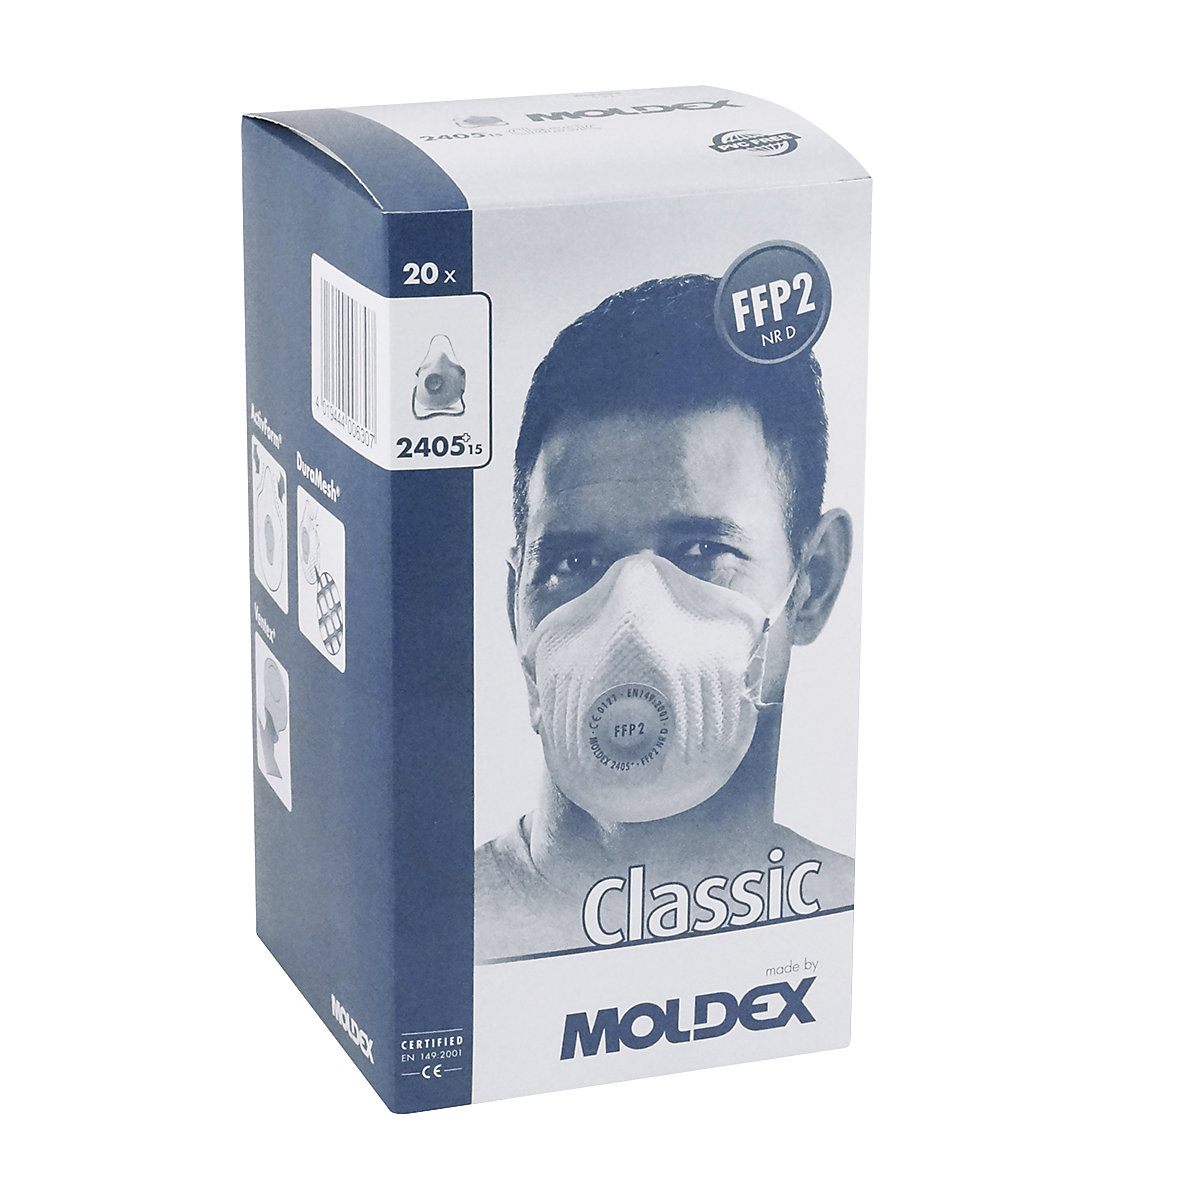 Maska za zaštitu dišnih putova FFP2 NR D – MOLDEX (Prikaz proizvoda 2)-1